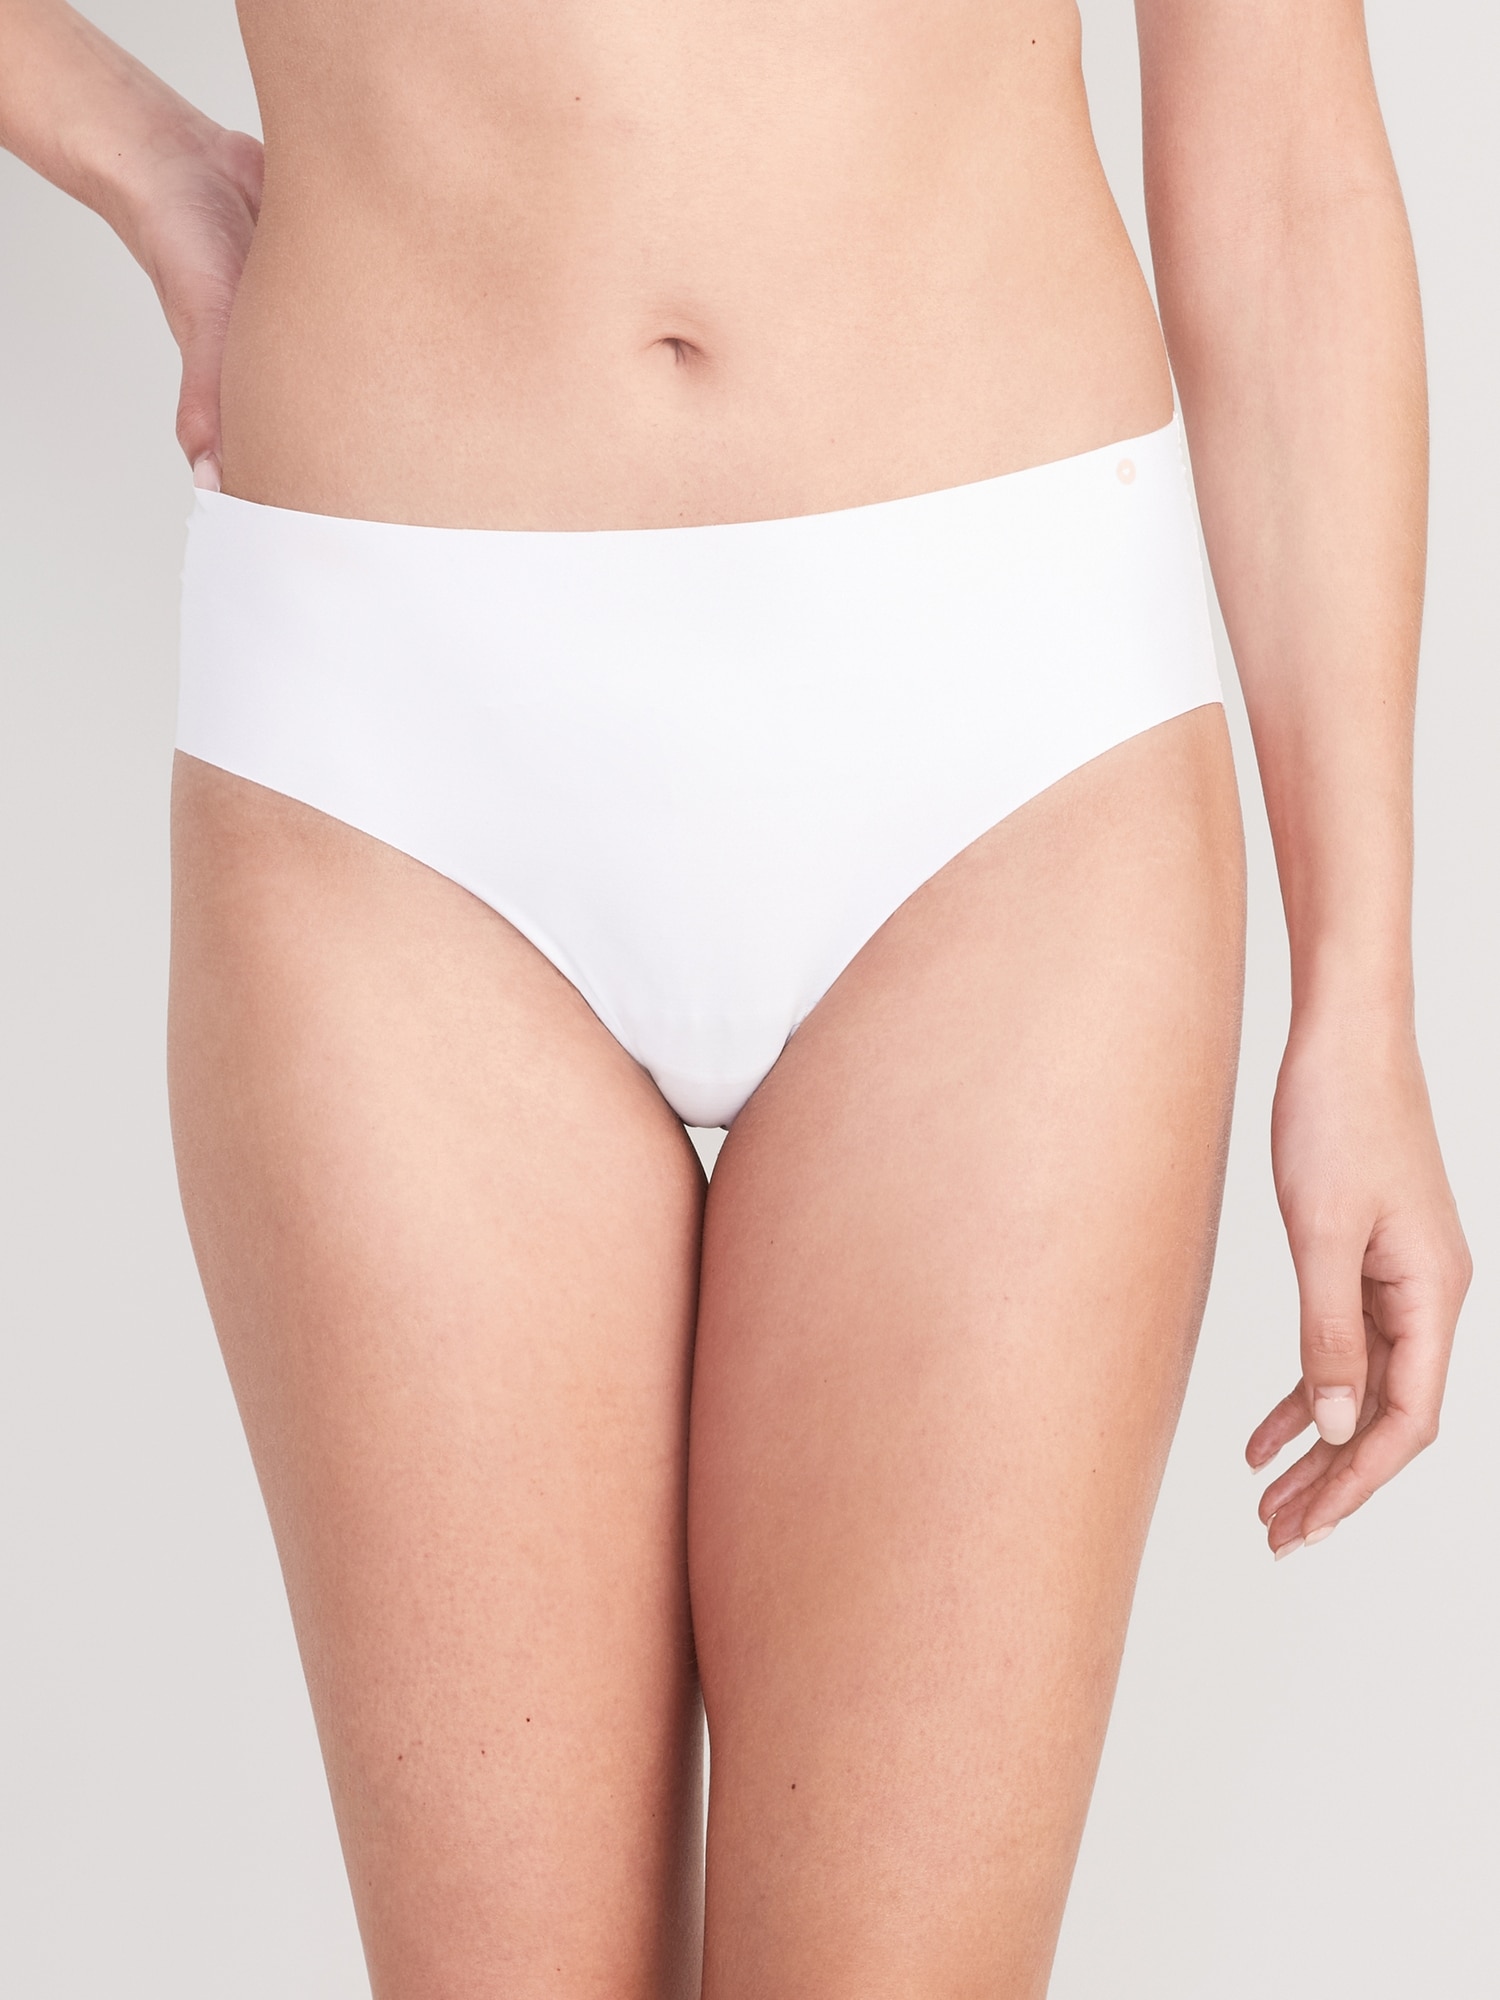 Gap Body Panties Seamless No-Show Hipster Women Underwear Undies